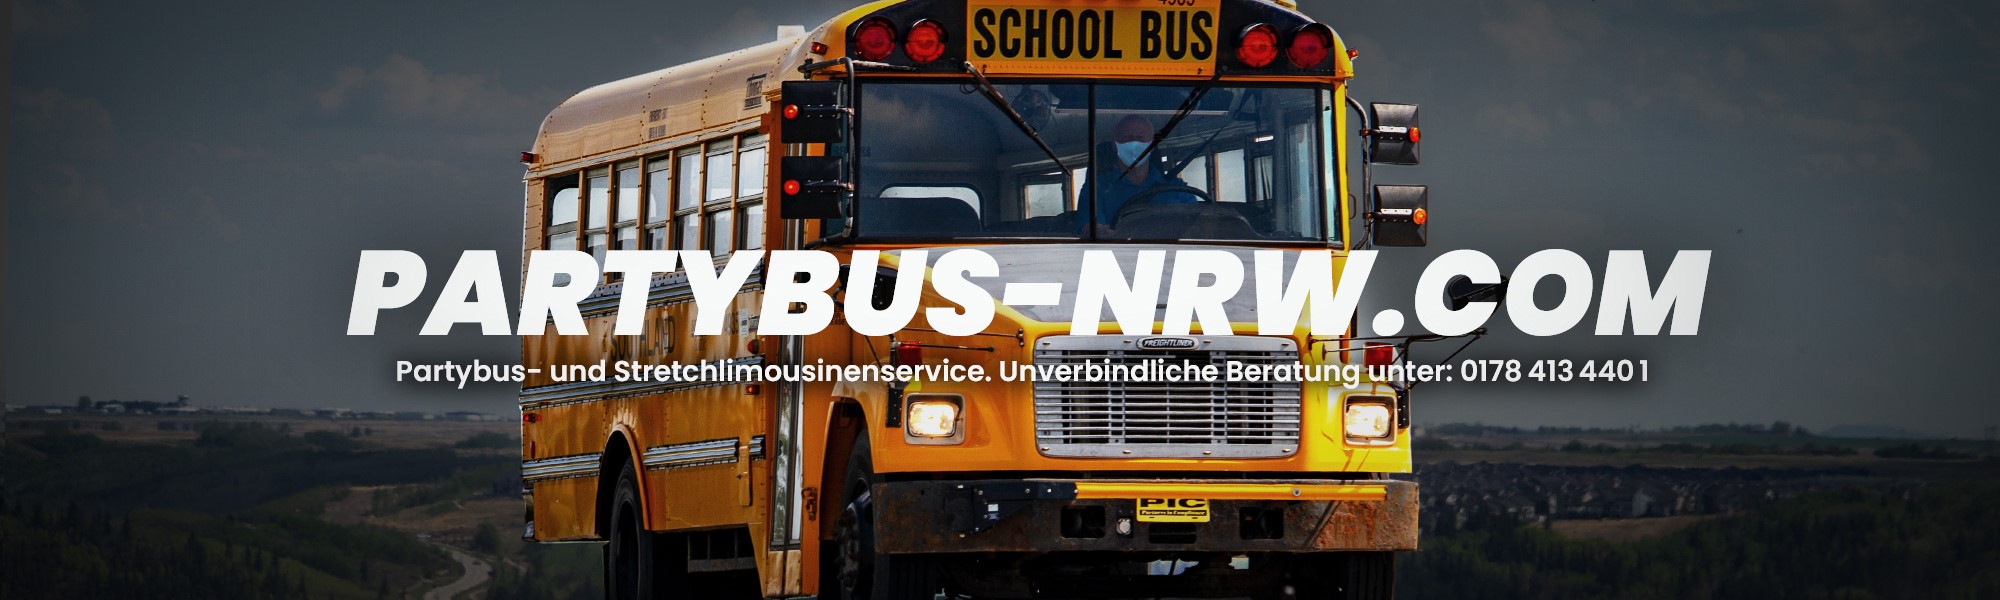 Partybus-NRW.com